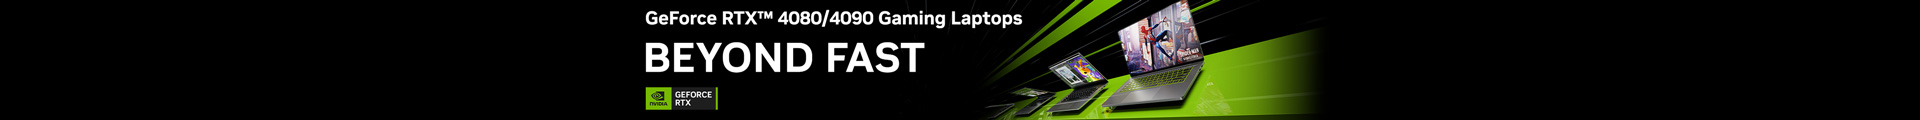 GeForce RTX 4080/4090 Gaming Laptops BEYOND FAST